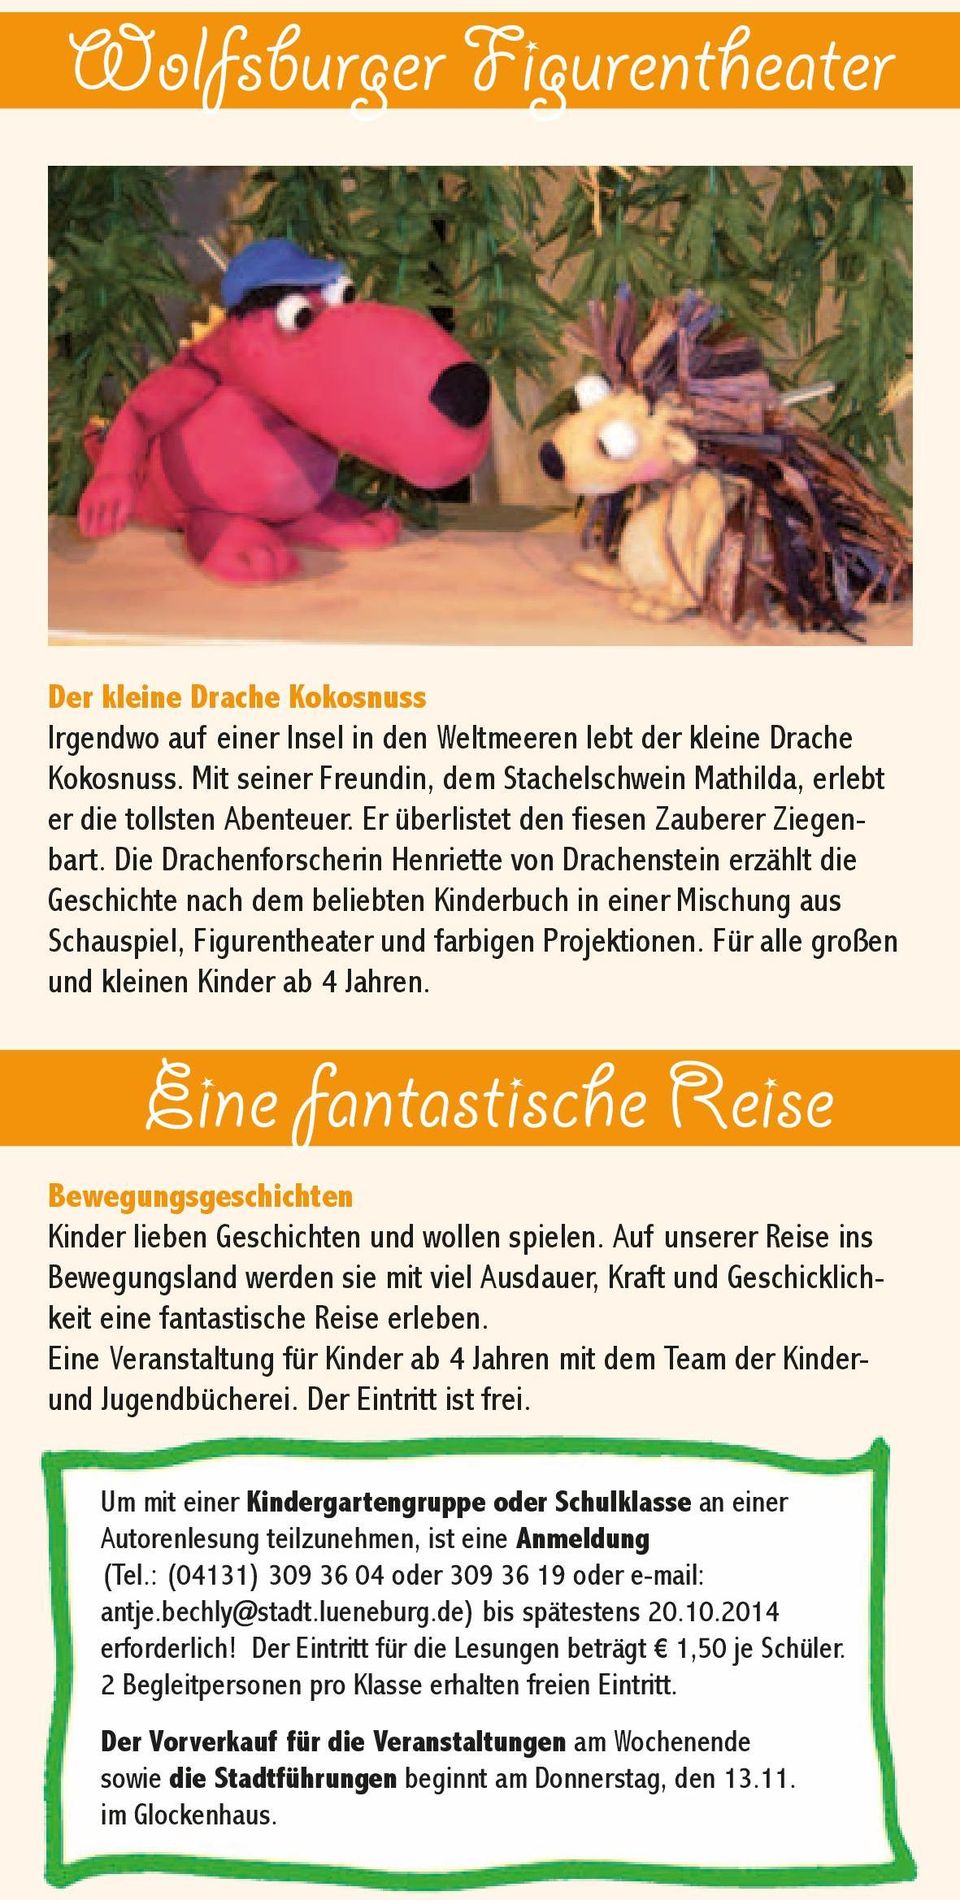 Die Drachenforscherin Henriette von Drachenstein erzählt die Geschichte nach dem beliebten Kinderbuch in einer Mischung aus Schauspiel, Figurentheater und farbigen Projektionen.